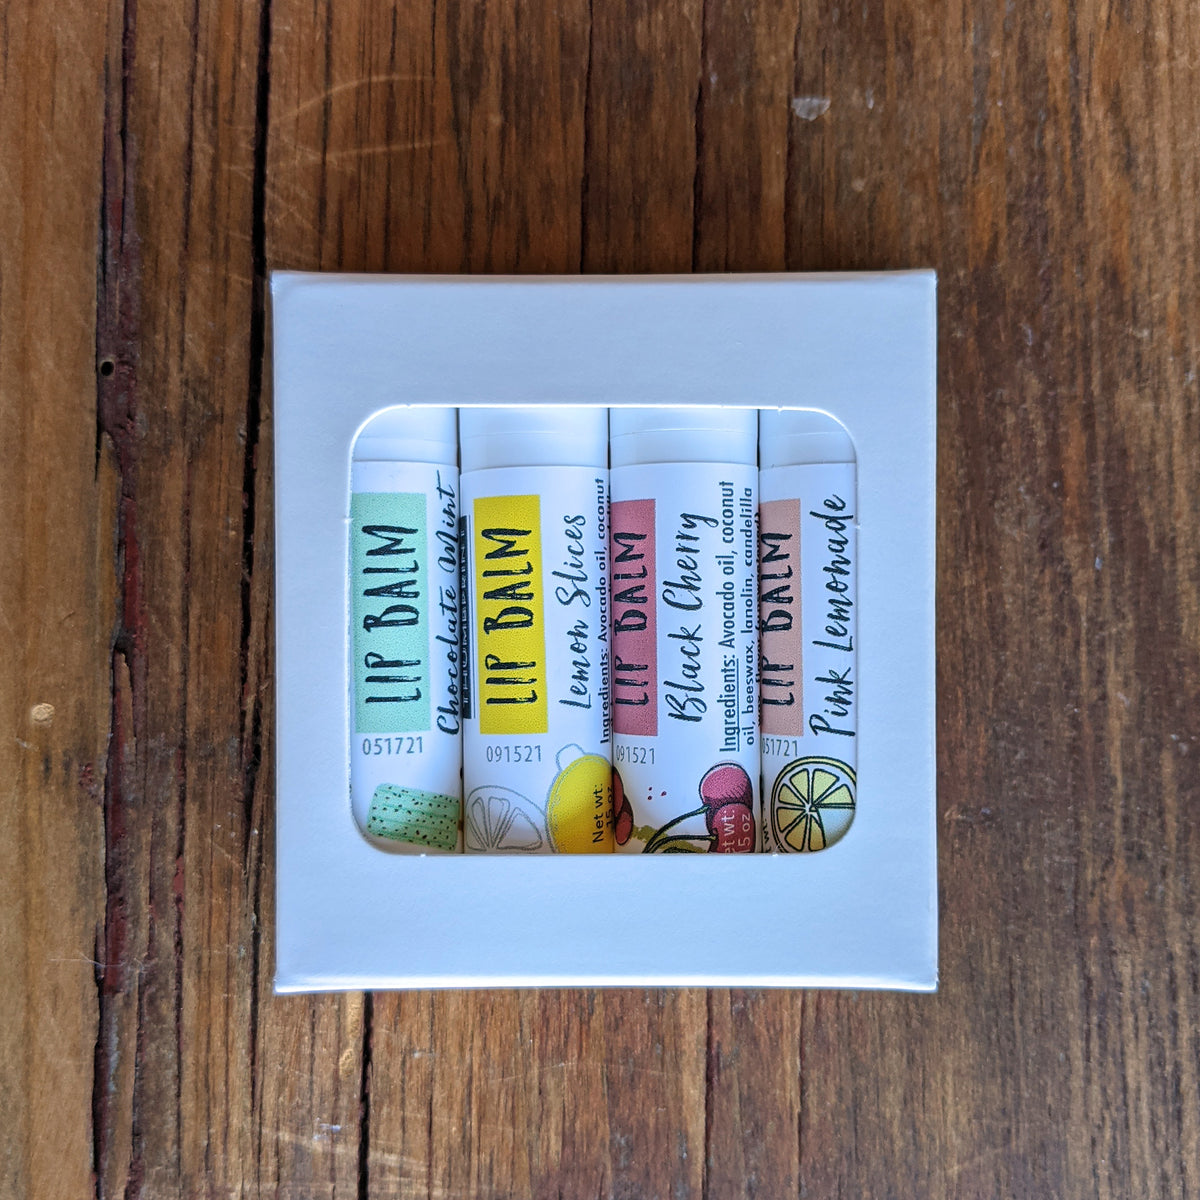 Lip Balm 4 Pack - 4 random flavors